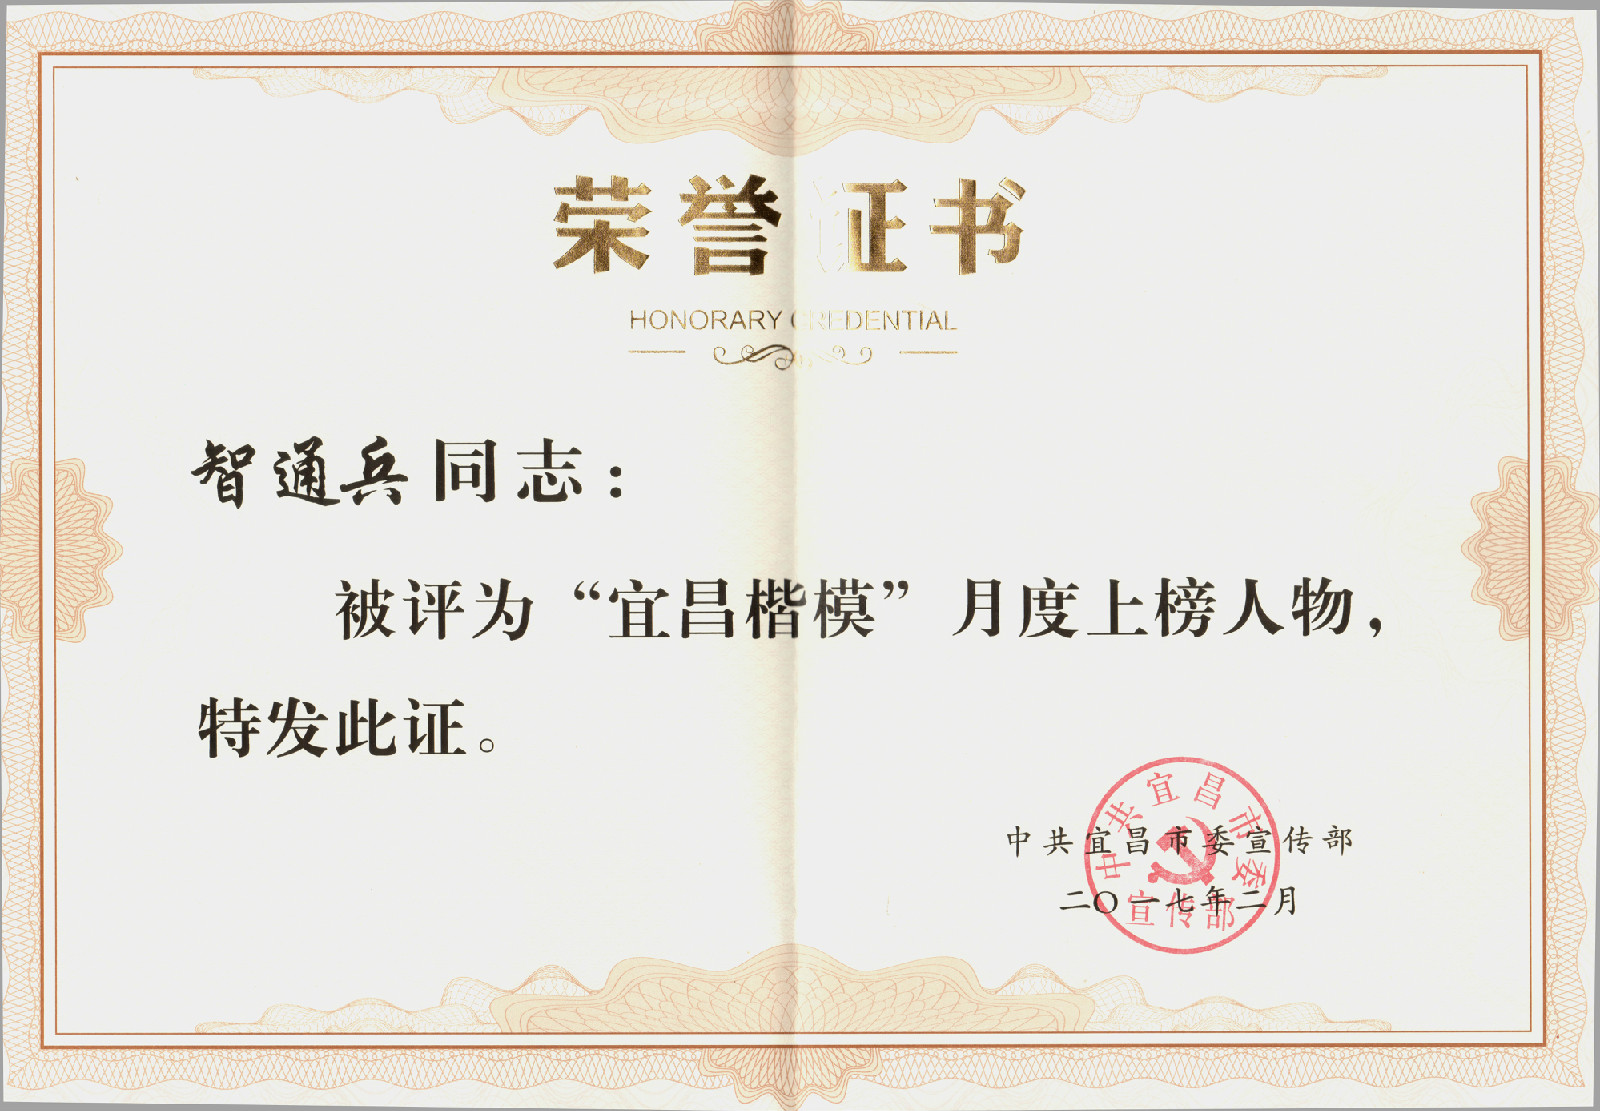 智通兵被宜昌市委宣传部评为“宜昌楷模”月度上榜人物。